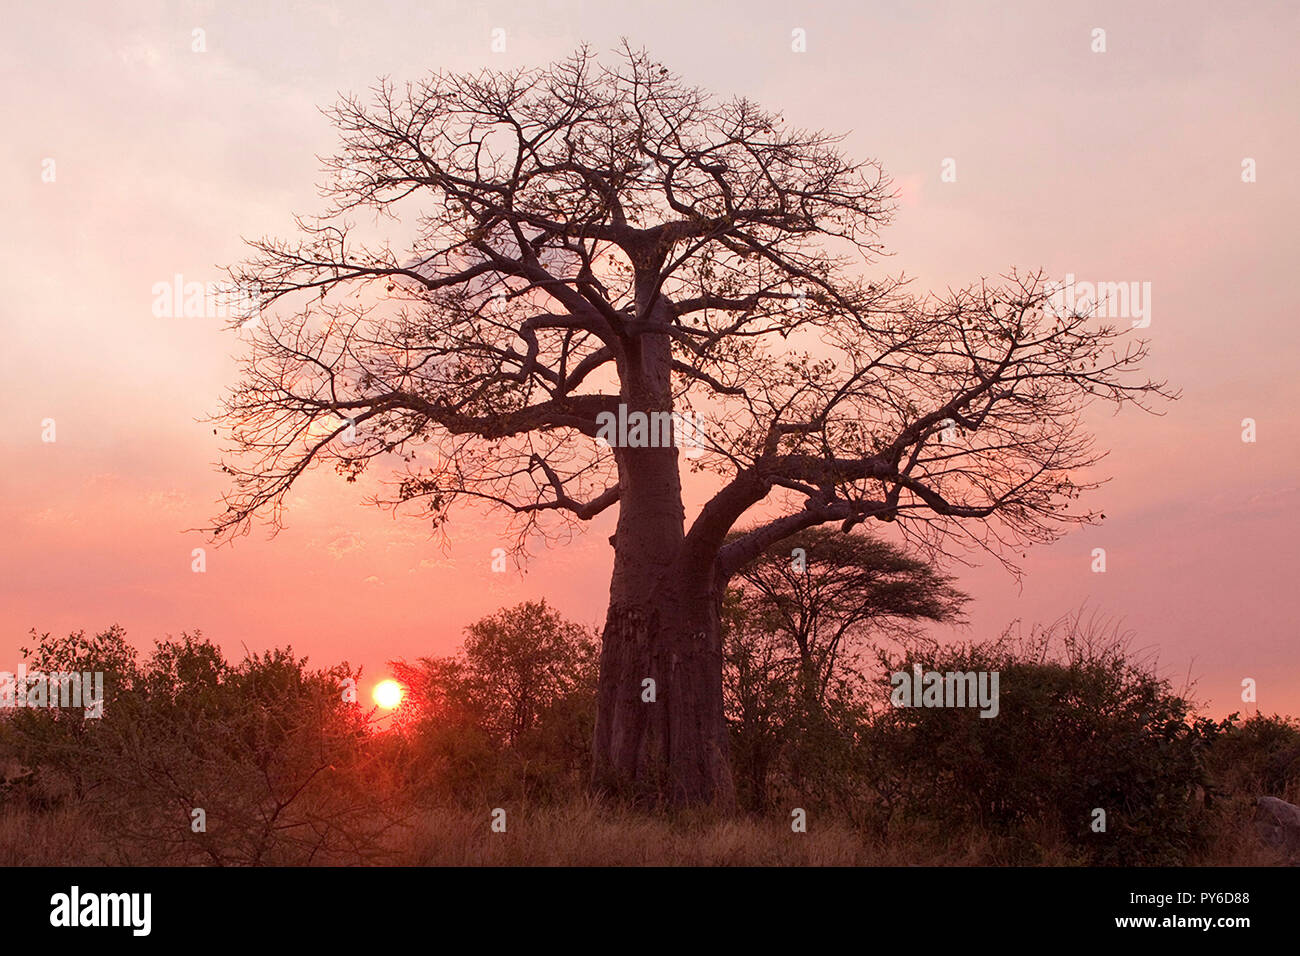 Les contours d'un immense distinctif vieux baobab rend le contour classique d'un arbre, à la fois dans l'air et l'importance culturelle dans tout le temps chaud et sec Banque D'Images